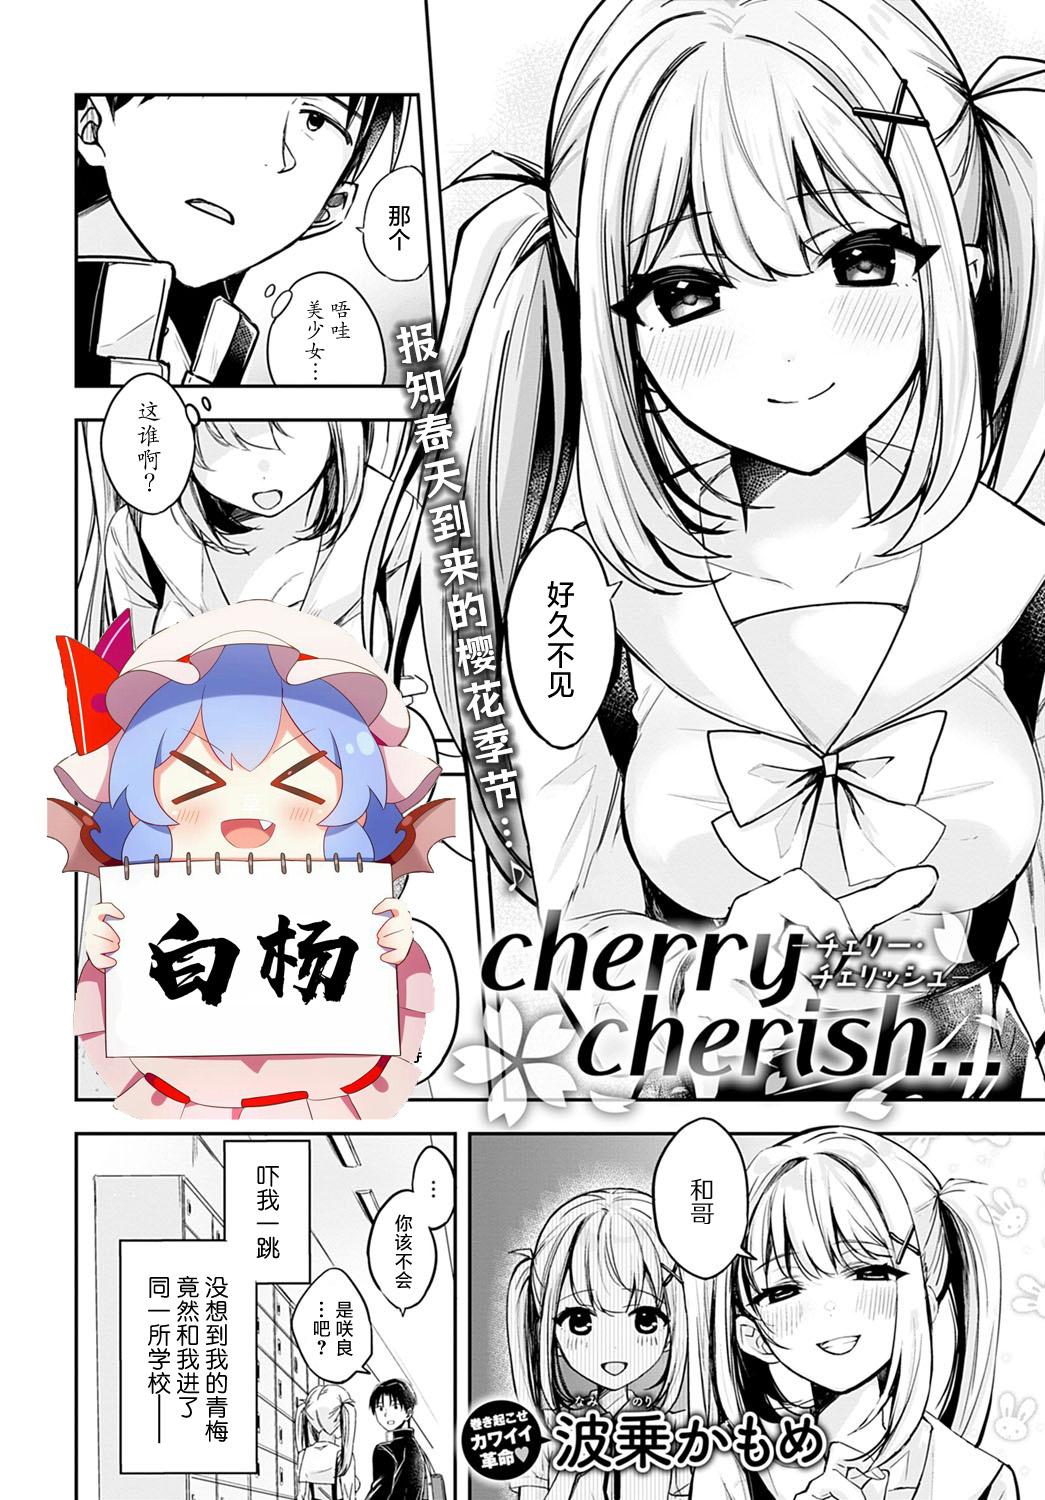 cherry cherish… 0